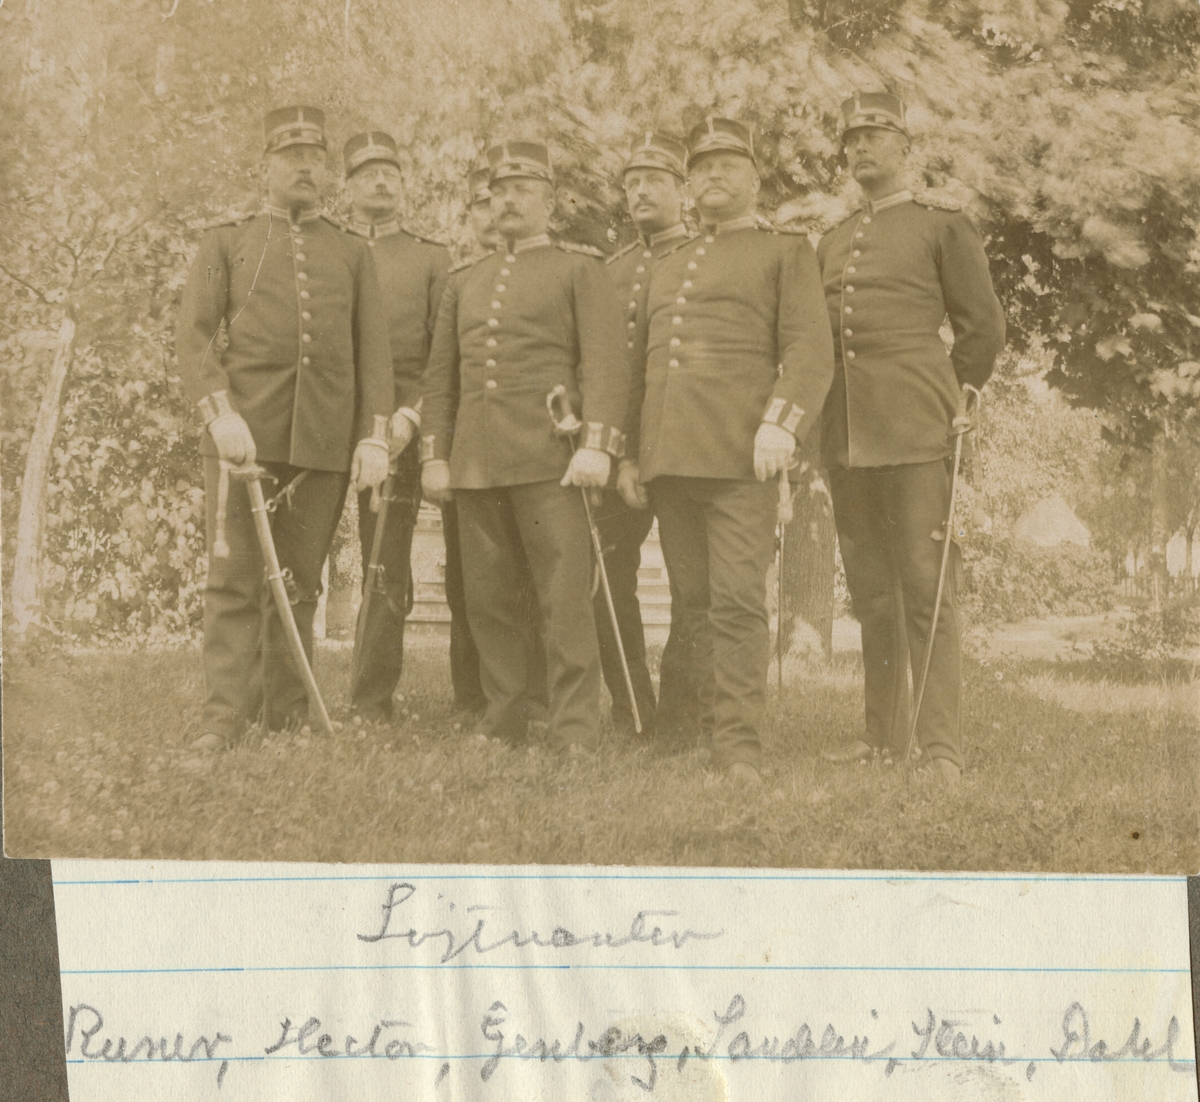 Gruppbild med löjtnanter från Hälsinge regemente. Enligt bildtexten: Runer, Hector, Genberg, Sandelin, Stein, Dahl.